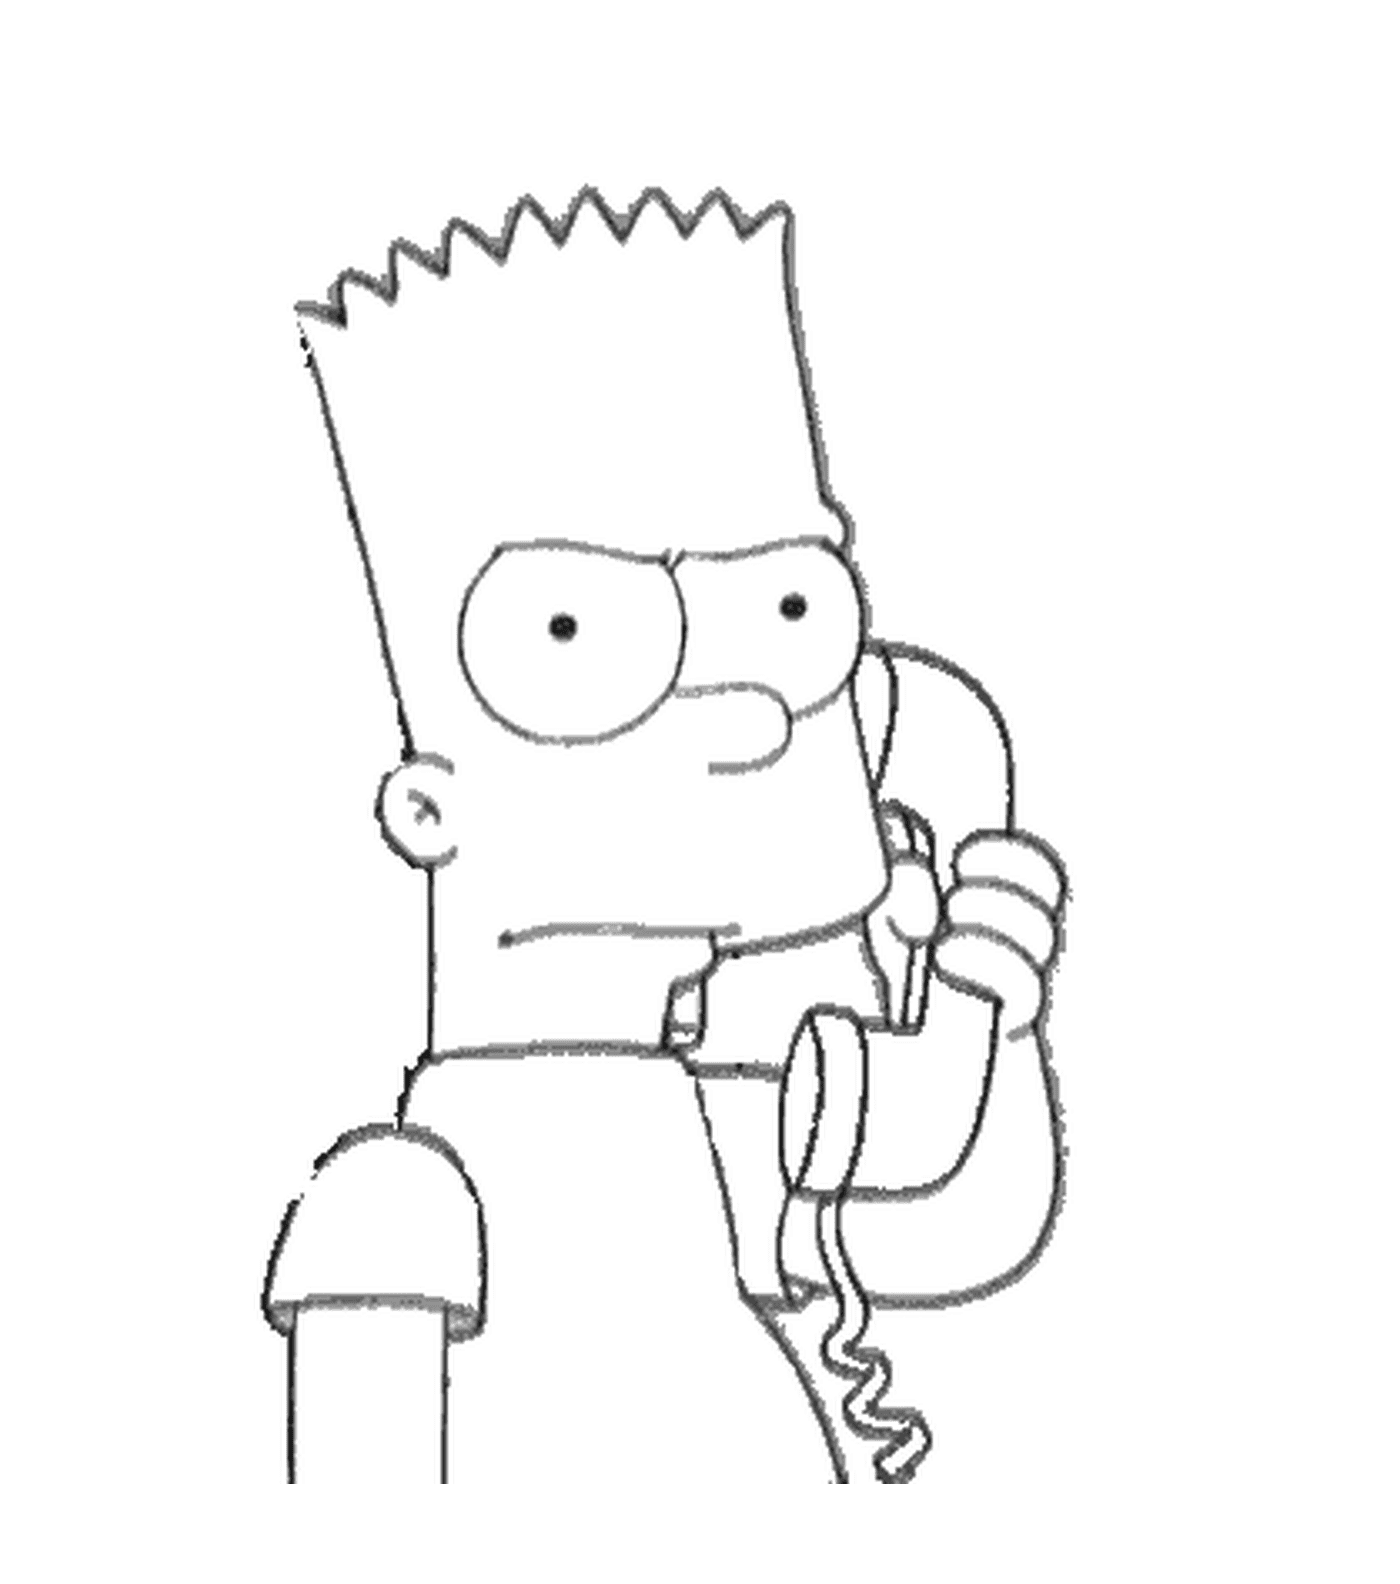   Bart sérieux au téléphone 